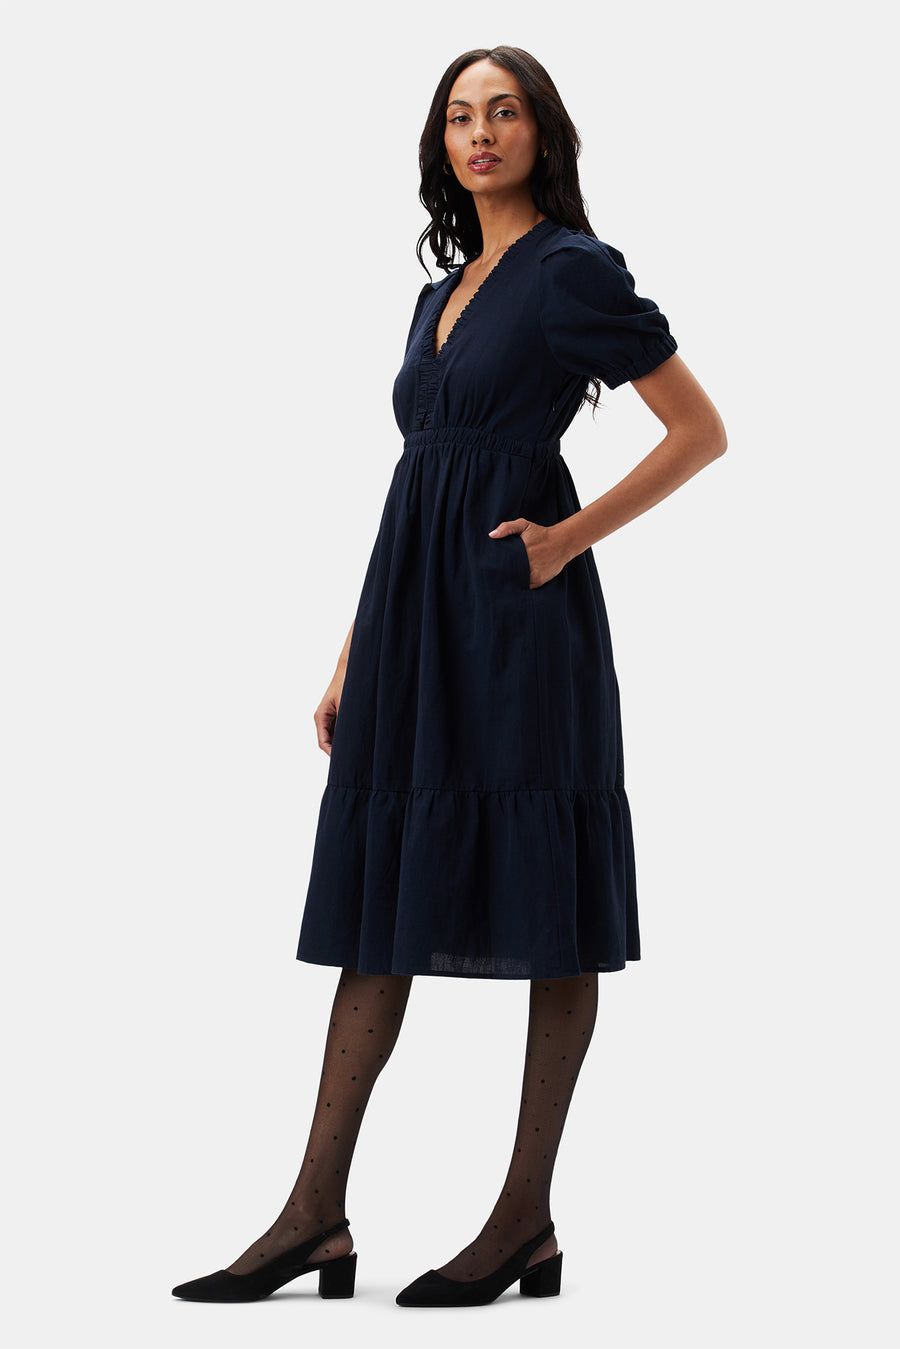 Danielle Cotton Linen Dress - Navy Blue